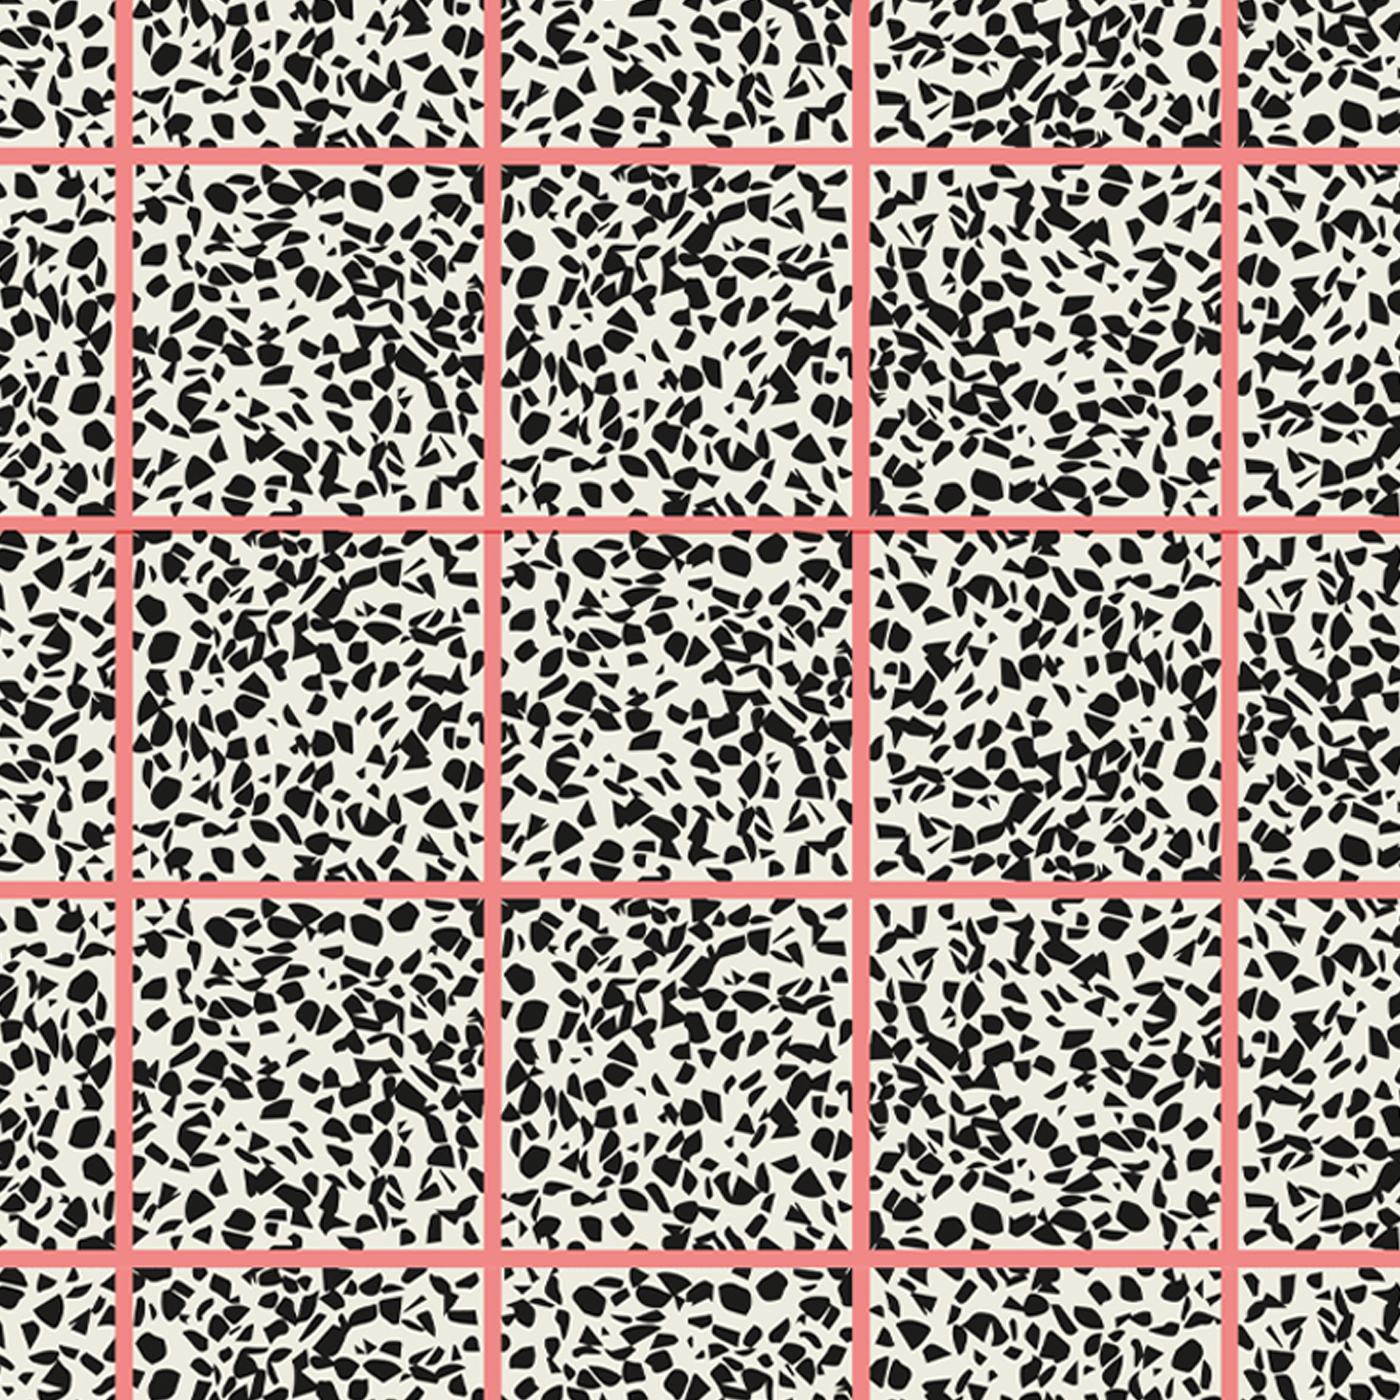 MaVoix-wallpaper-Escape-strawberry-by-Studio-Lievito-pattern